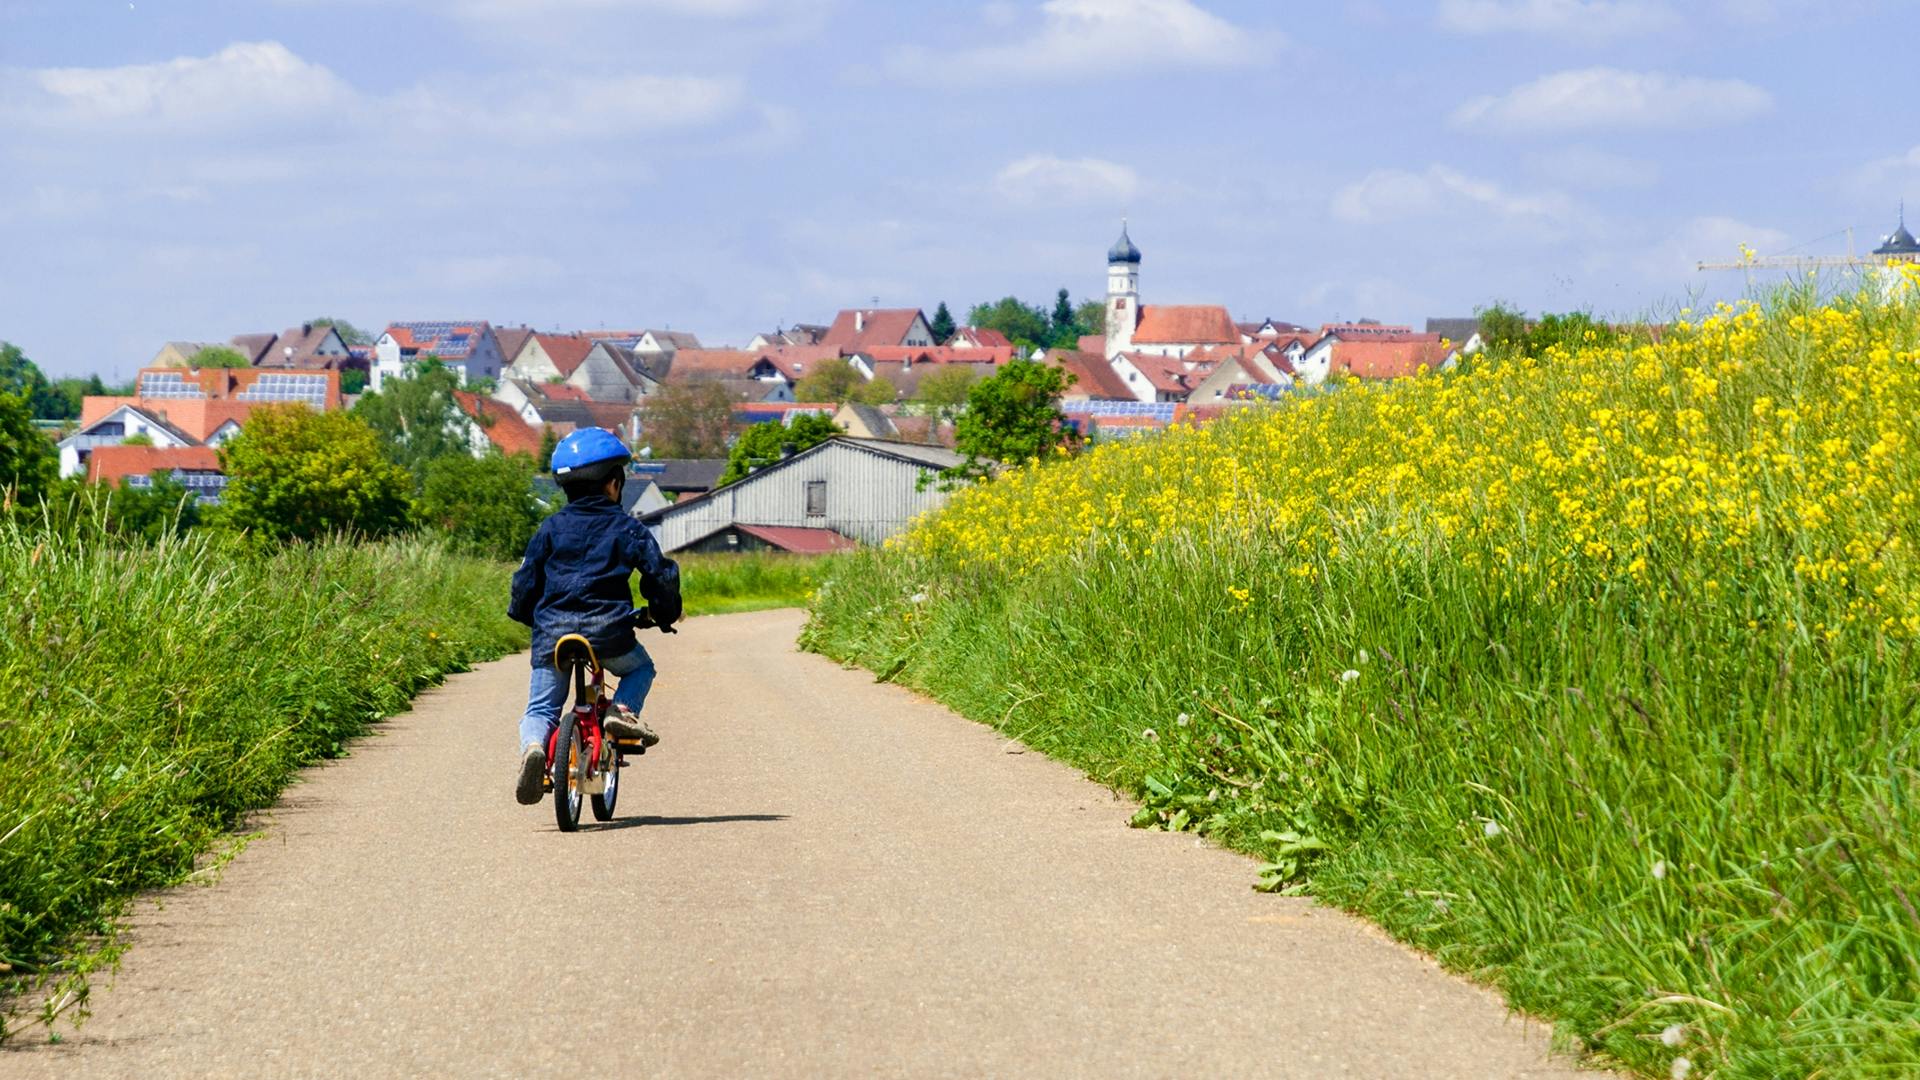 Ein Kind fährt auf einem Fahrrad auf einer Straße durch Rapsfelder, die zu einem Dorf führt.